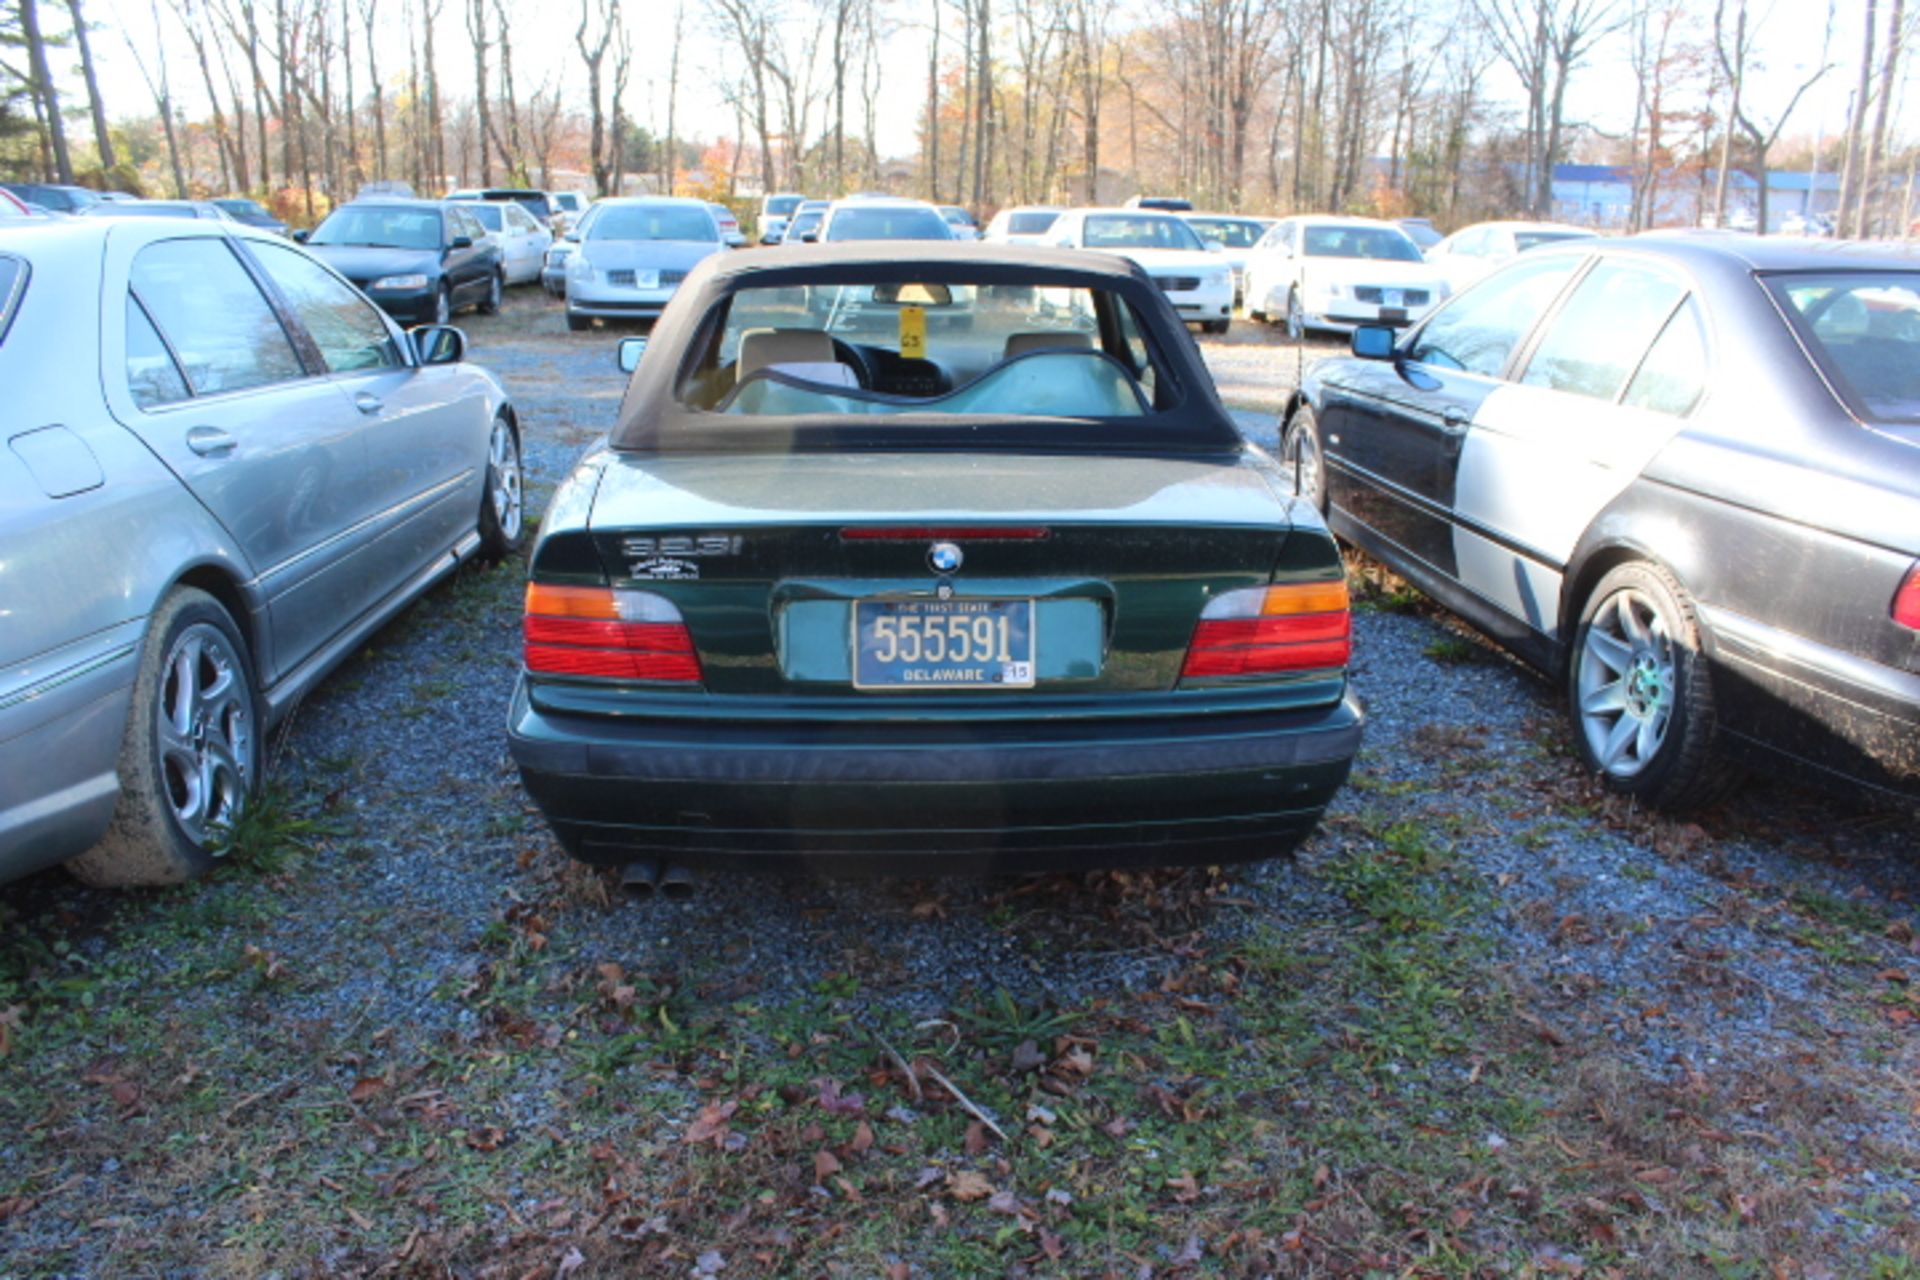 1999 BMW 323i-NEEDS BACK WINDOW-CRACKED WINDSHIELD 119000 MILES,VIN WBABJ733XXEA65228, GOOD TITLE - Image 3 of 3